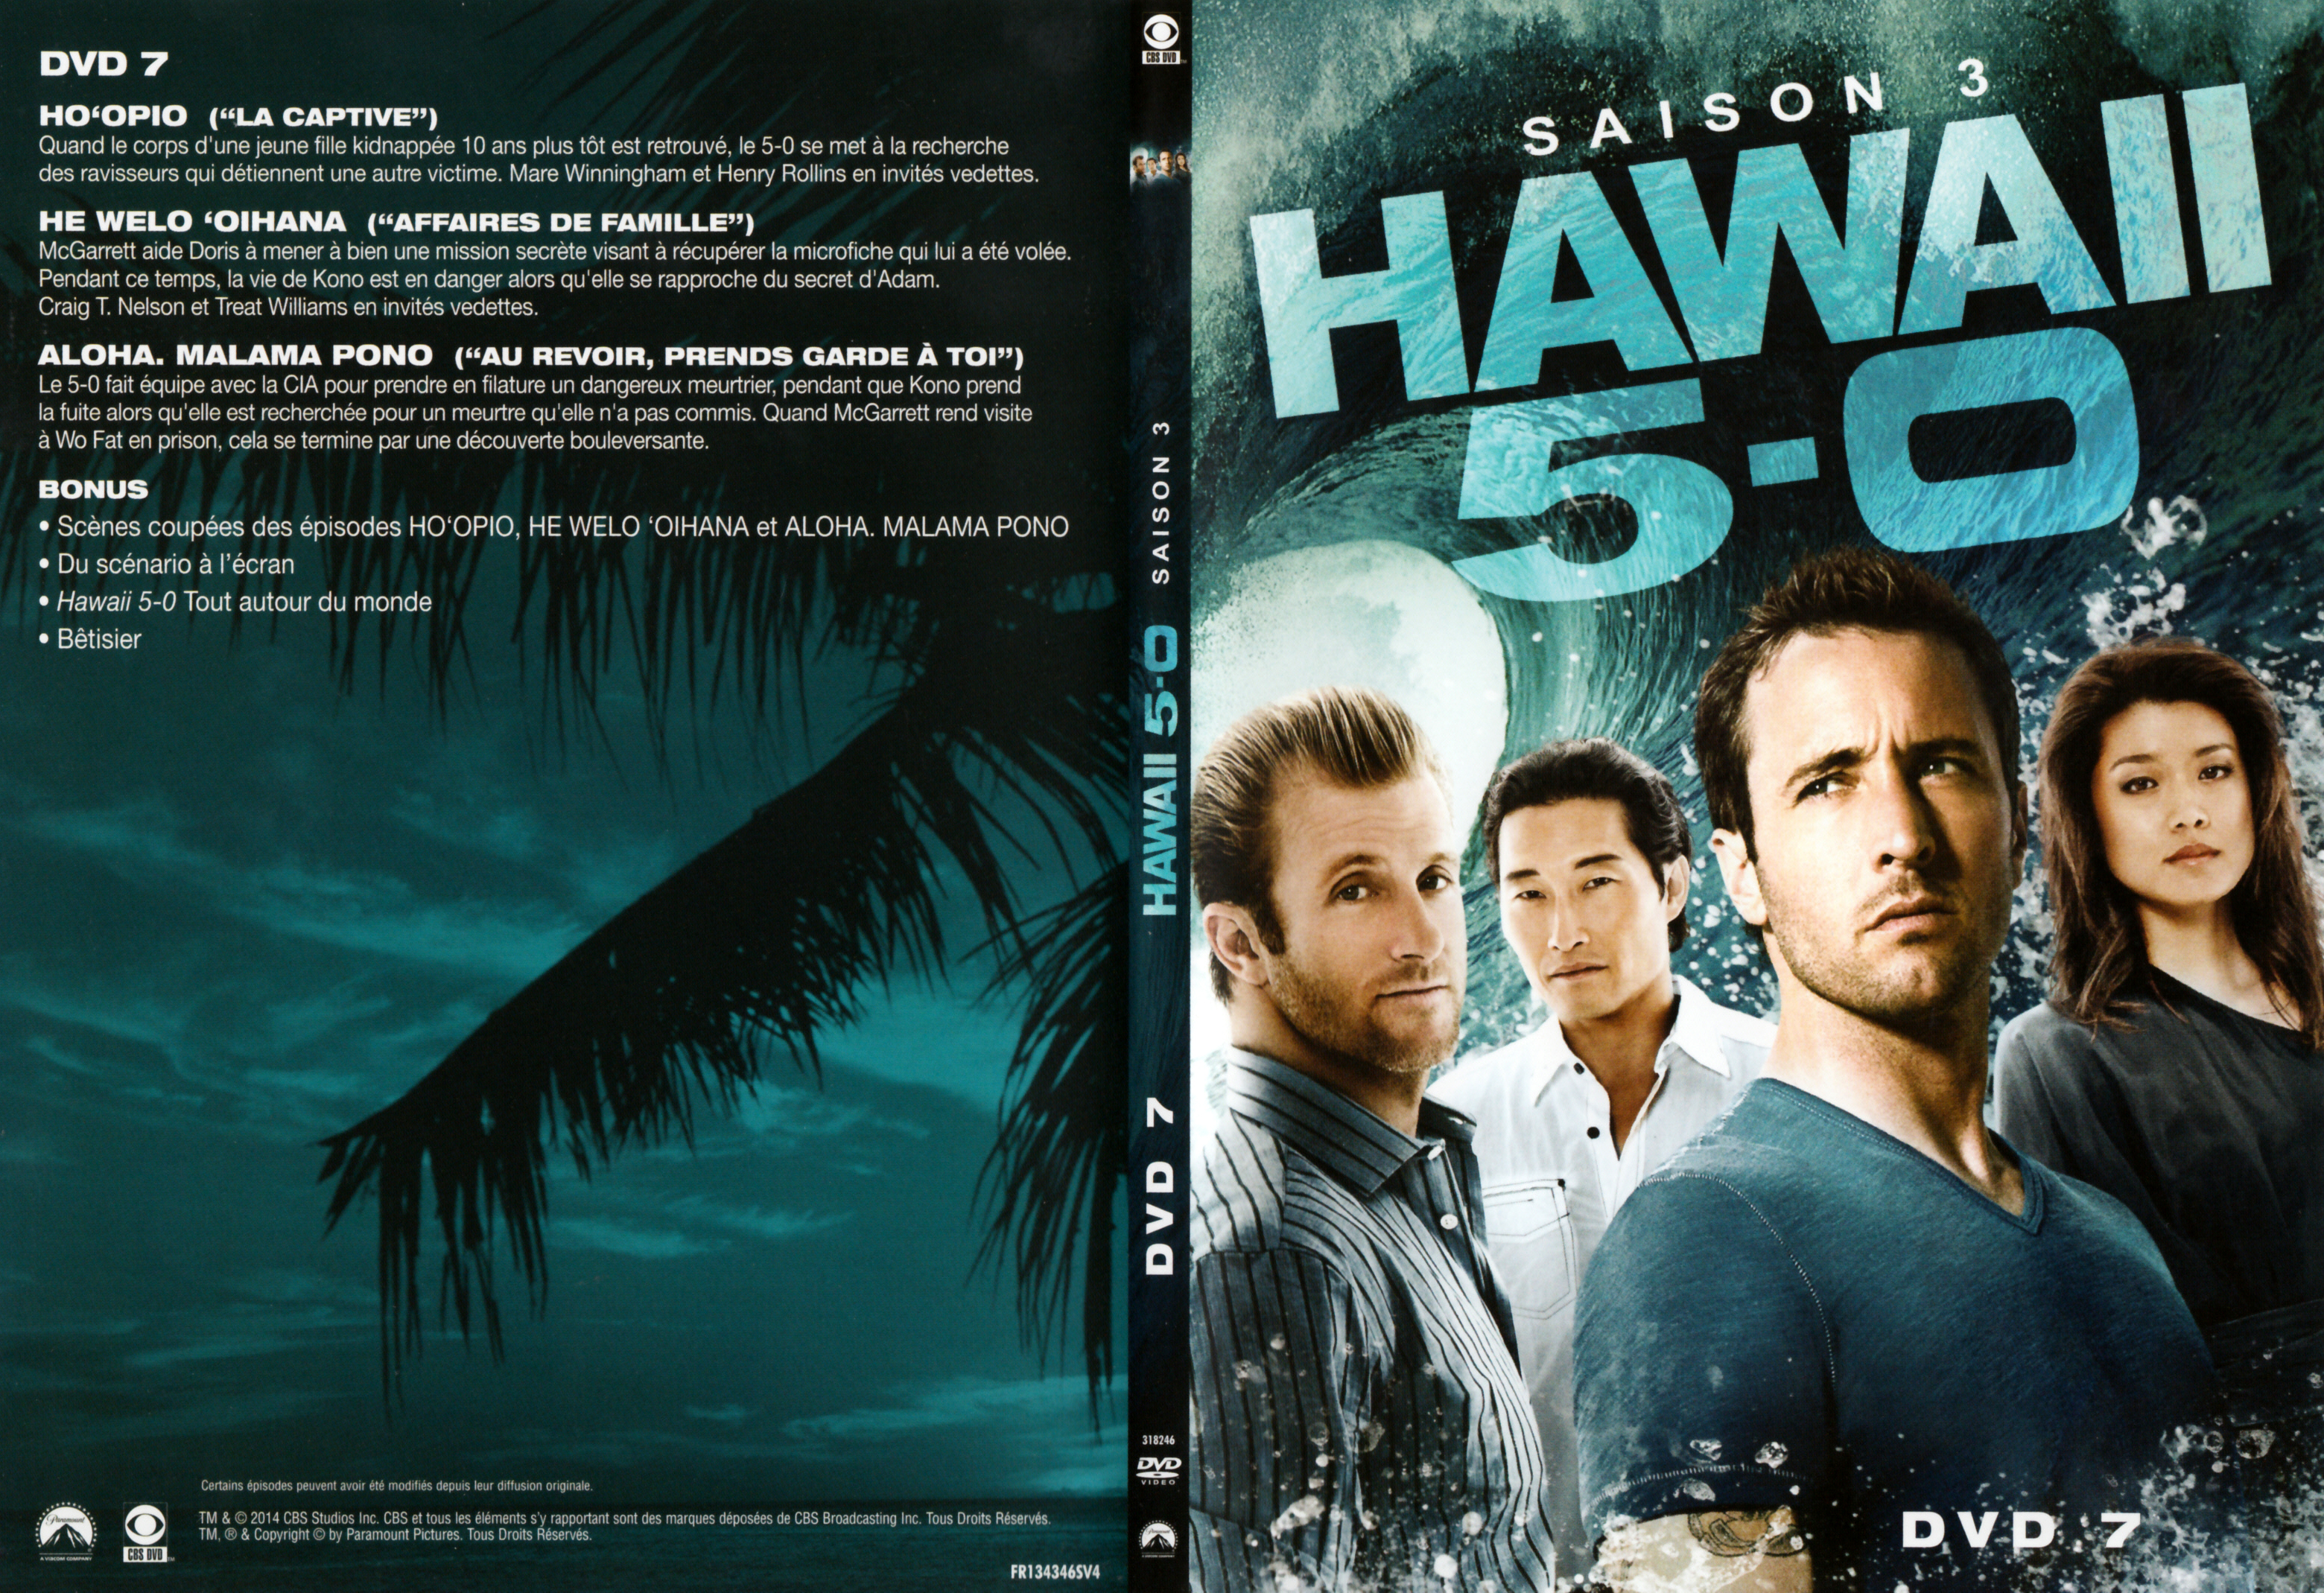 Jaquette DVD Hawaii Five-O Saison 3 DVD 4